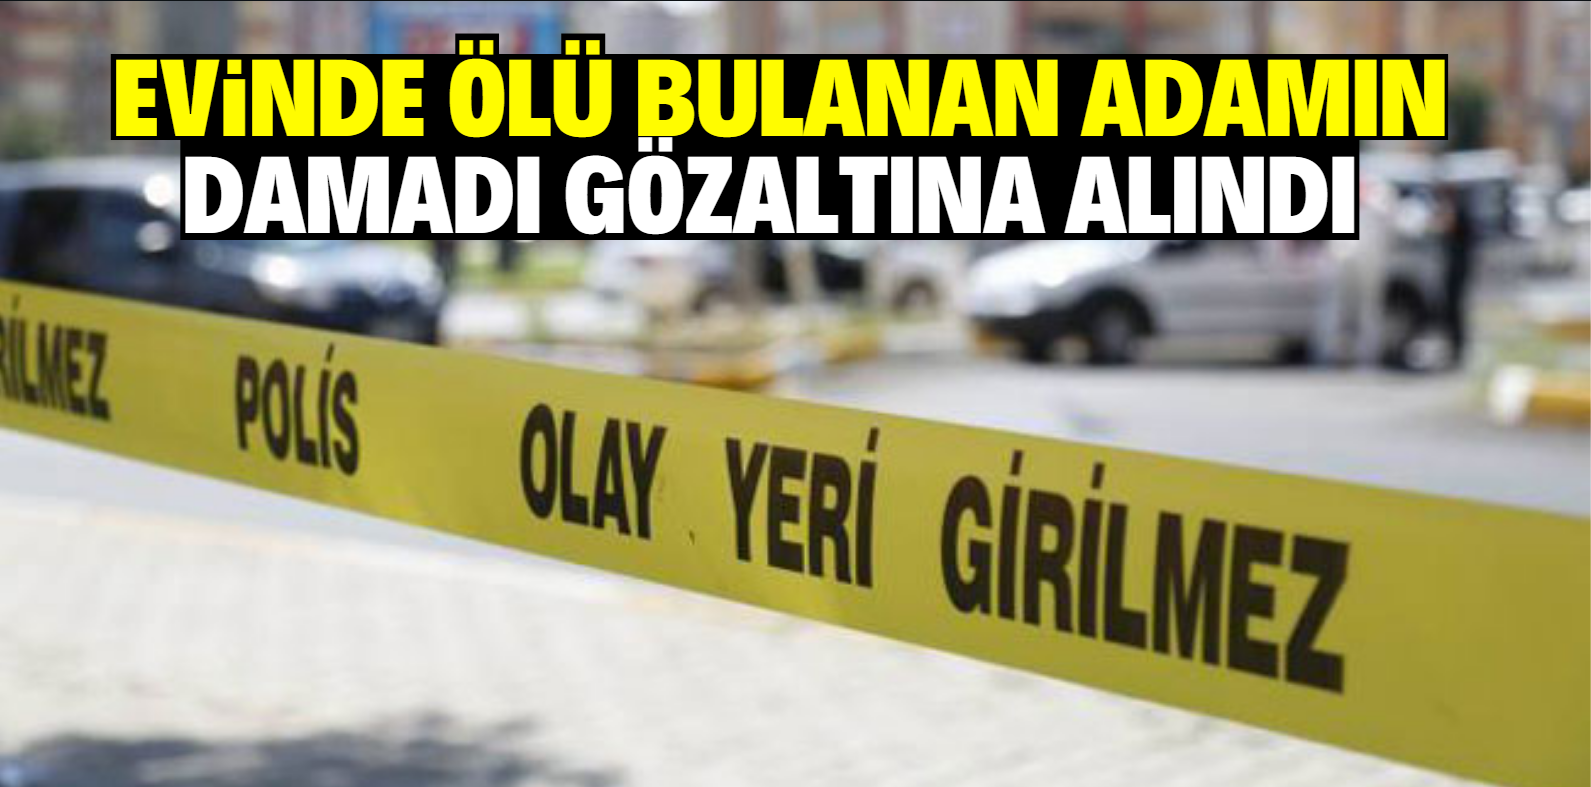 Konya'da yaşlı adamın öldürülmesine ilişkin damadı yakalandı